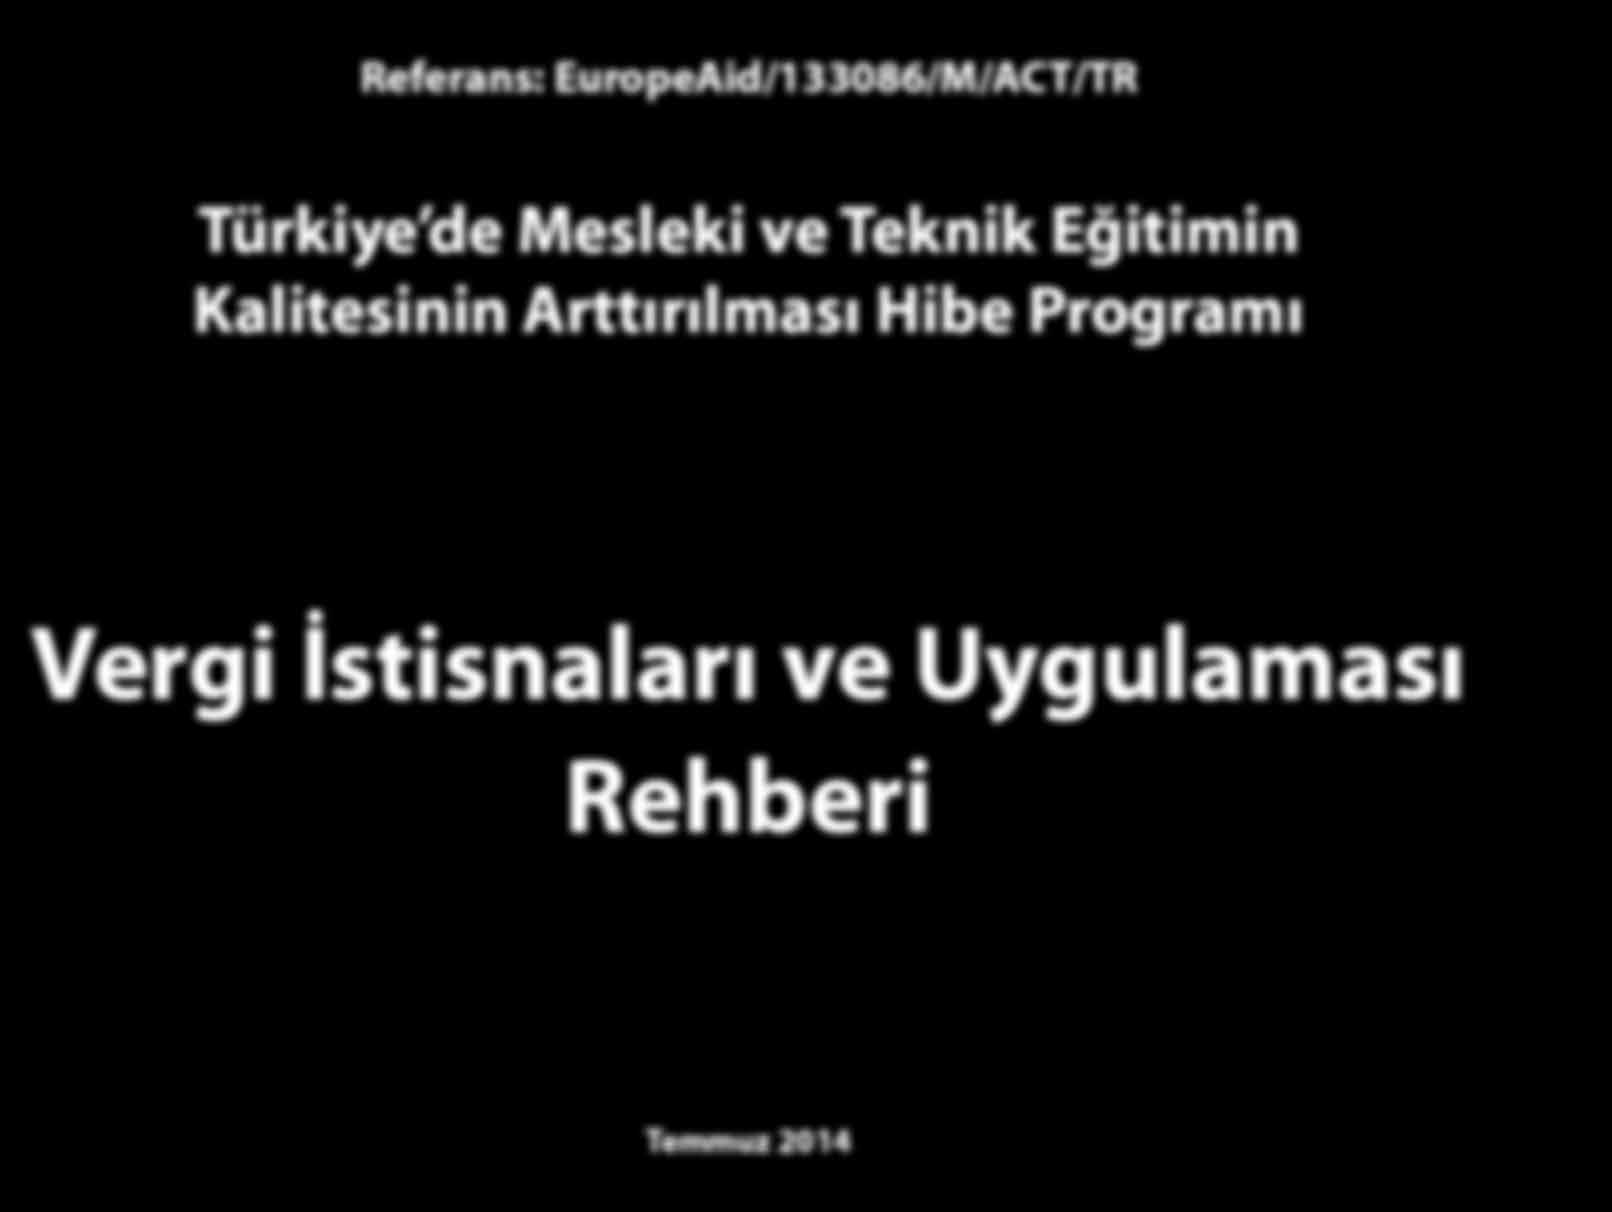 Referans: EuropeAid/133086/M/ACT/TR Türkiye de Mesleki ve Teknik Eğitimin